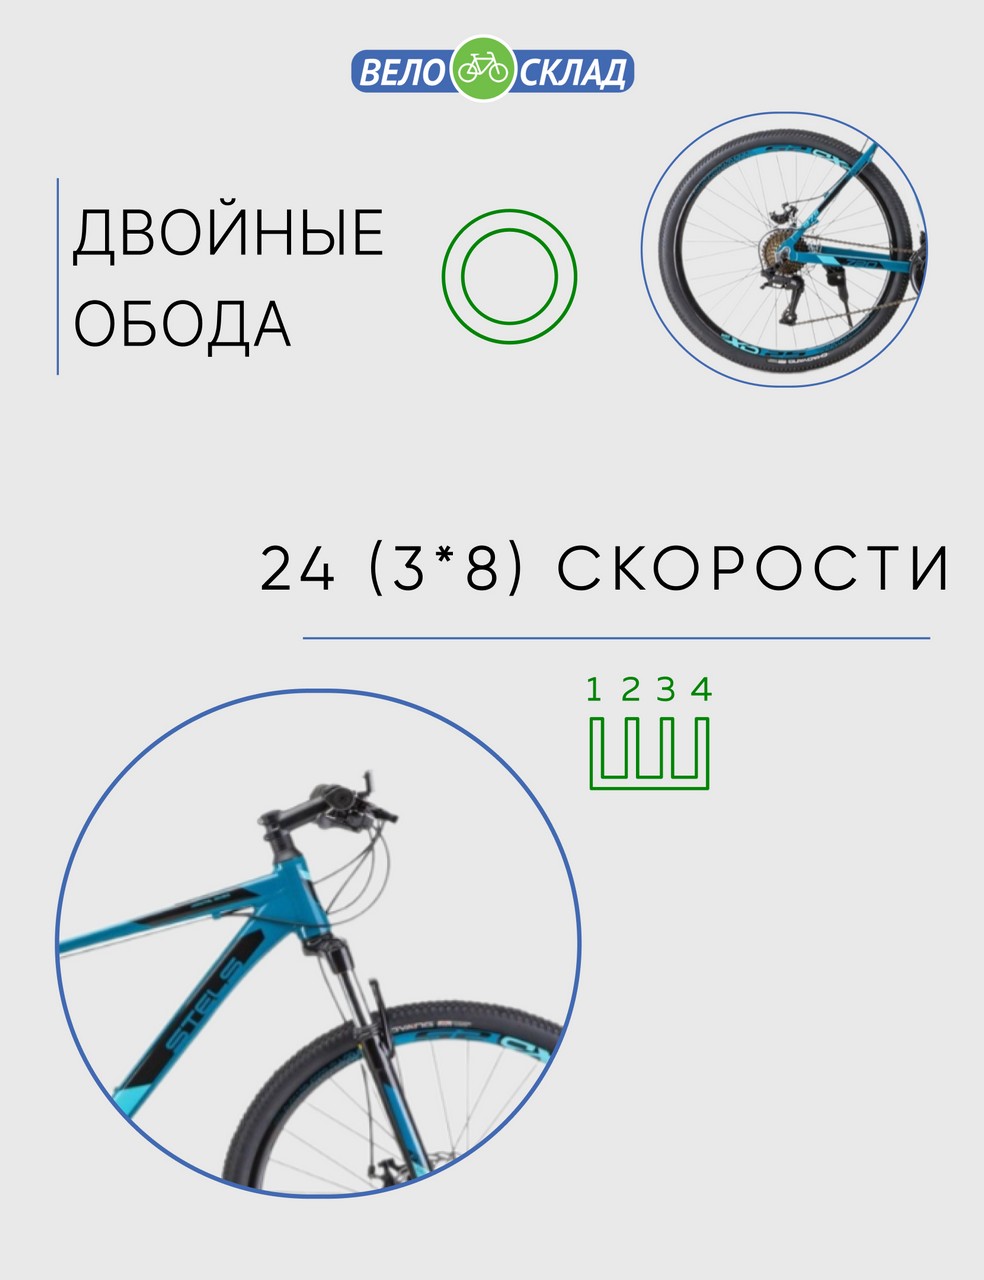 Горный велосипед Stels Navigator 720 MD 27.5 V010, год 2023, цвет Зеленый-Голубой, ростовка 15.5